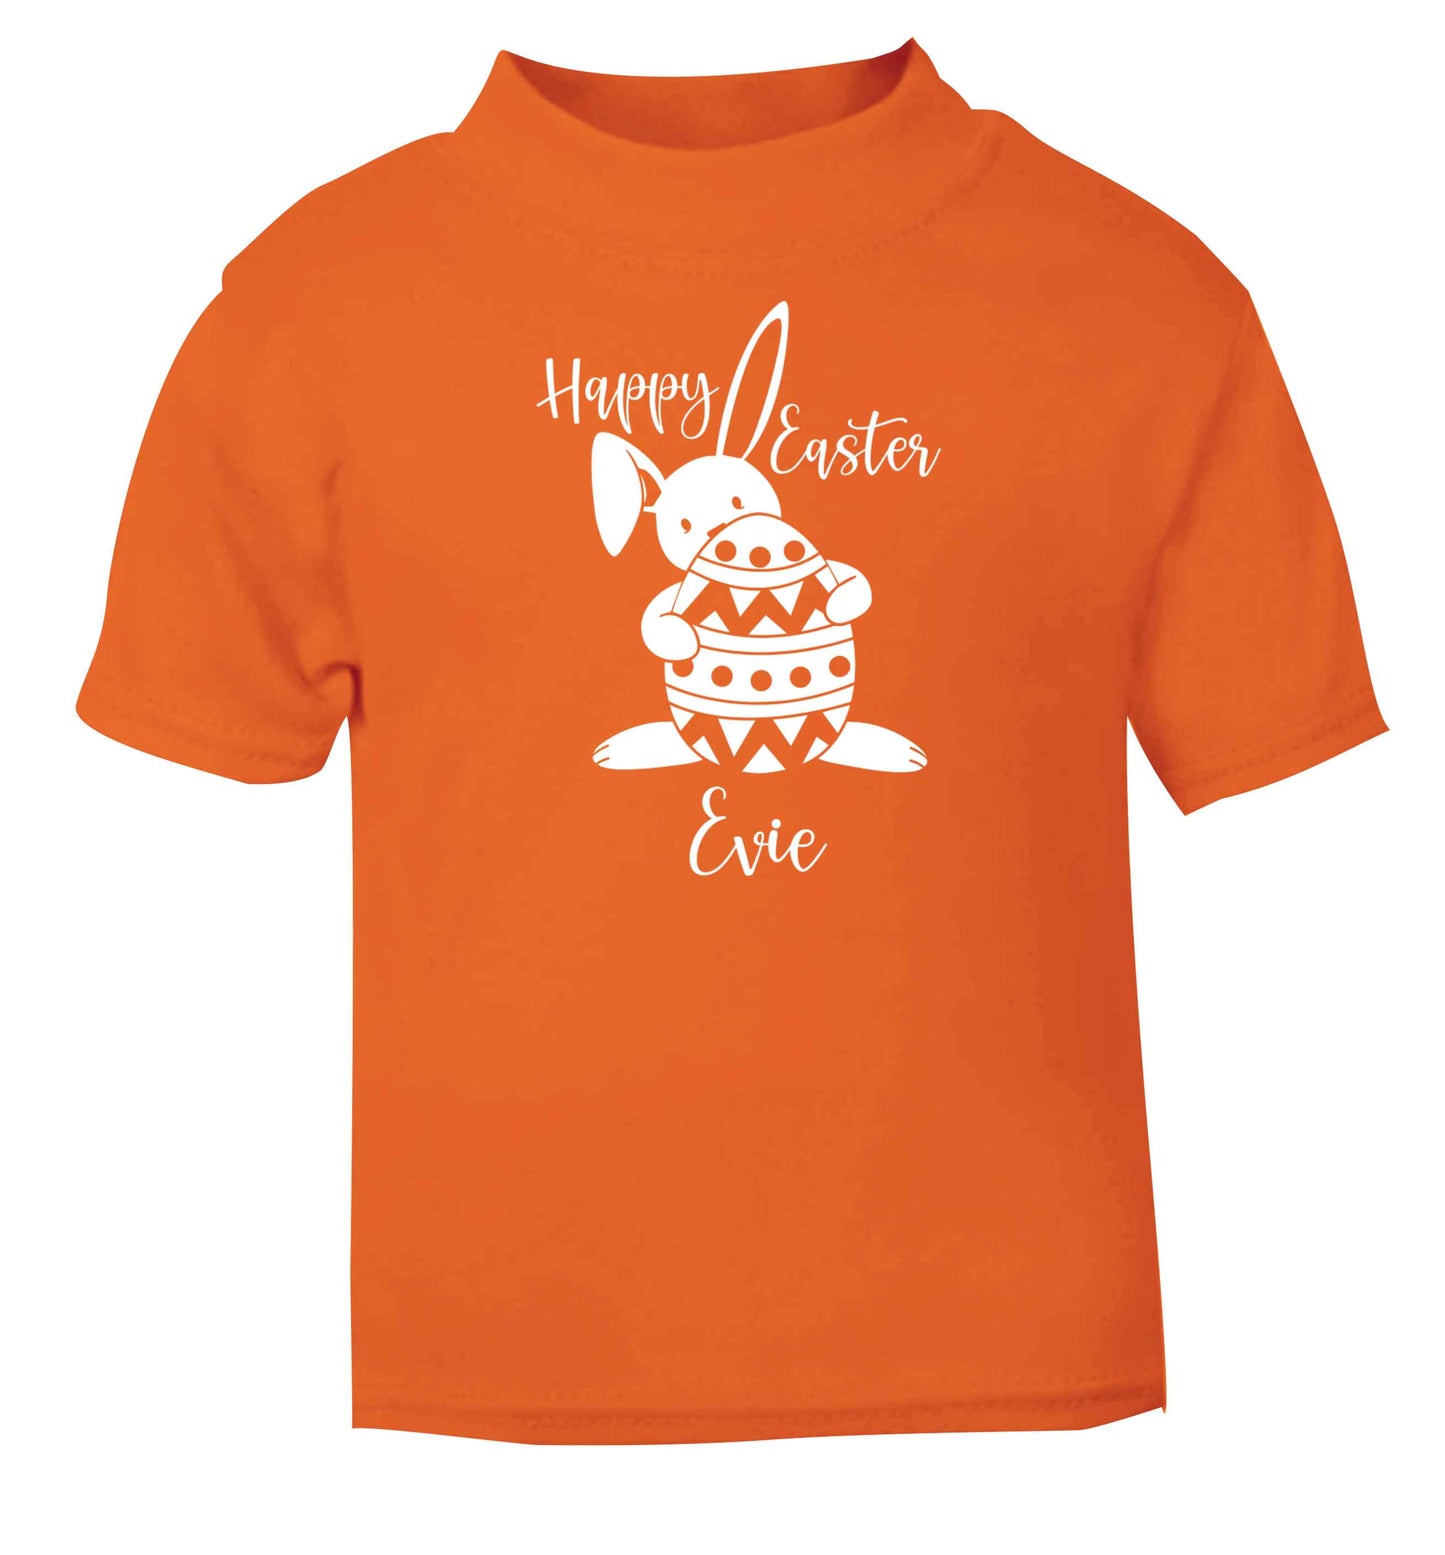 Happy Easter - personalised orange baby toddler Tshirt 2 Years